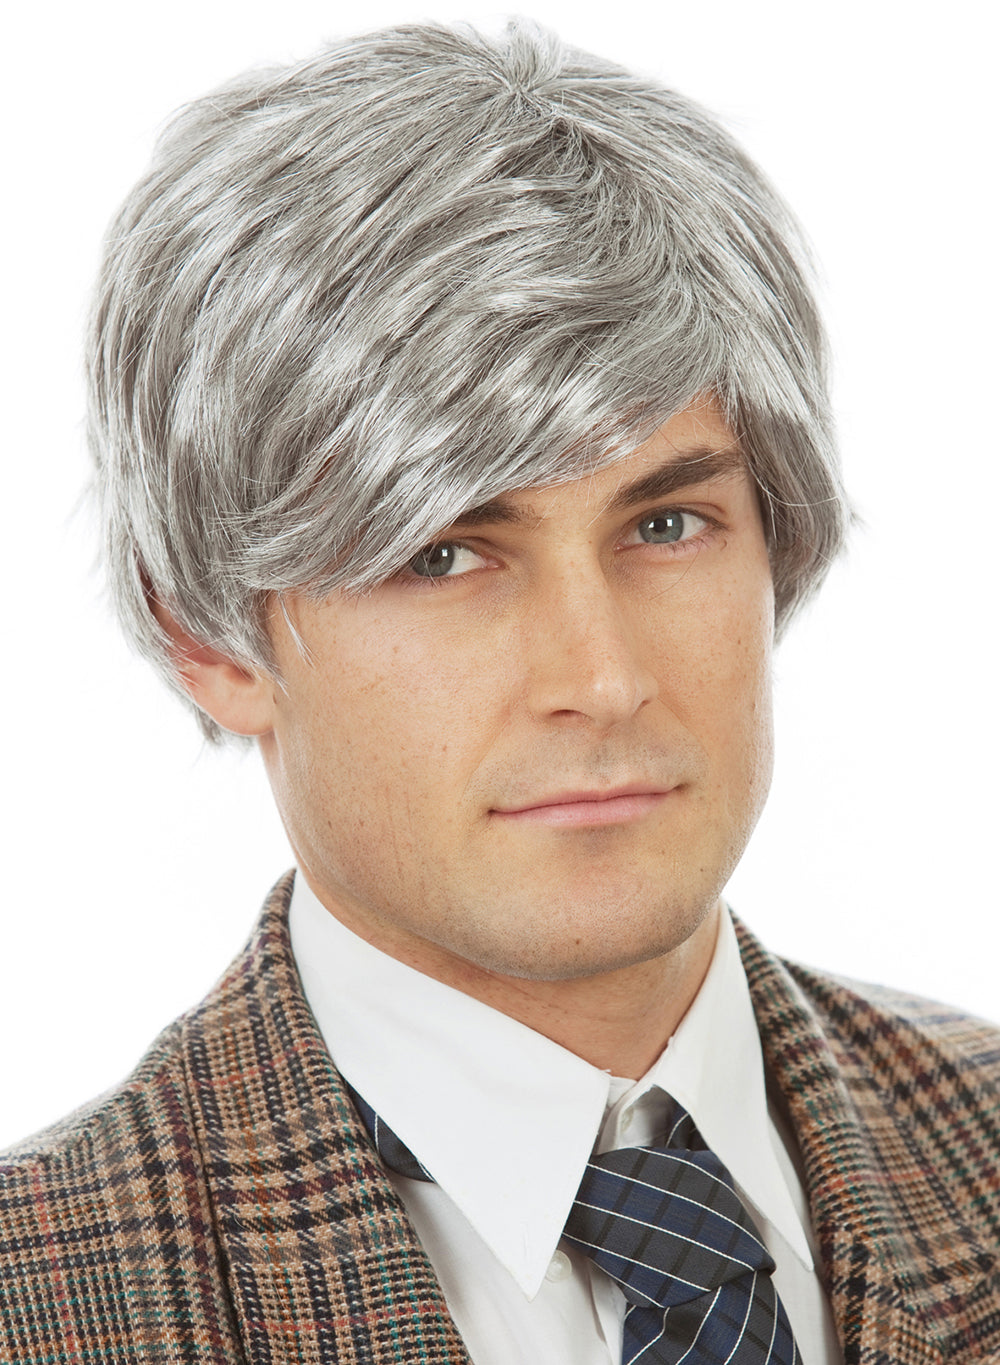 Grey Silver Grandpa Wig for Men